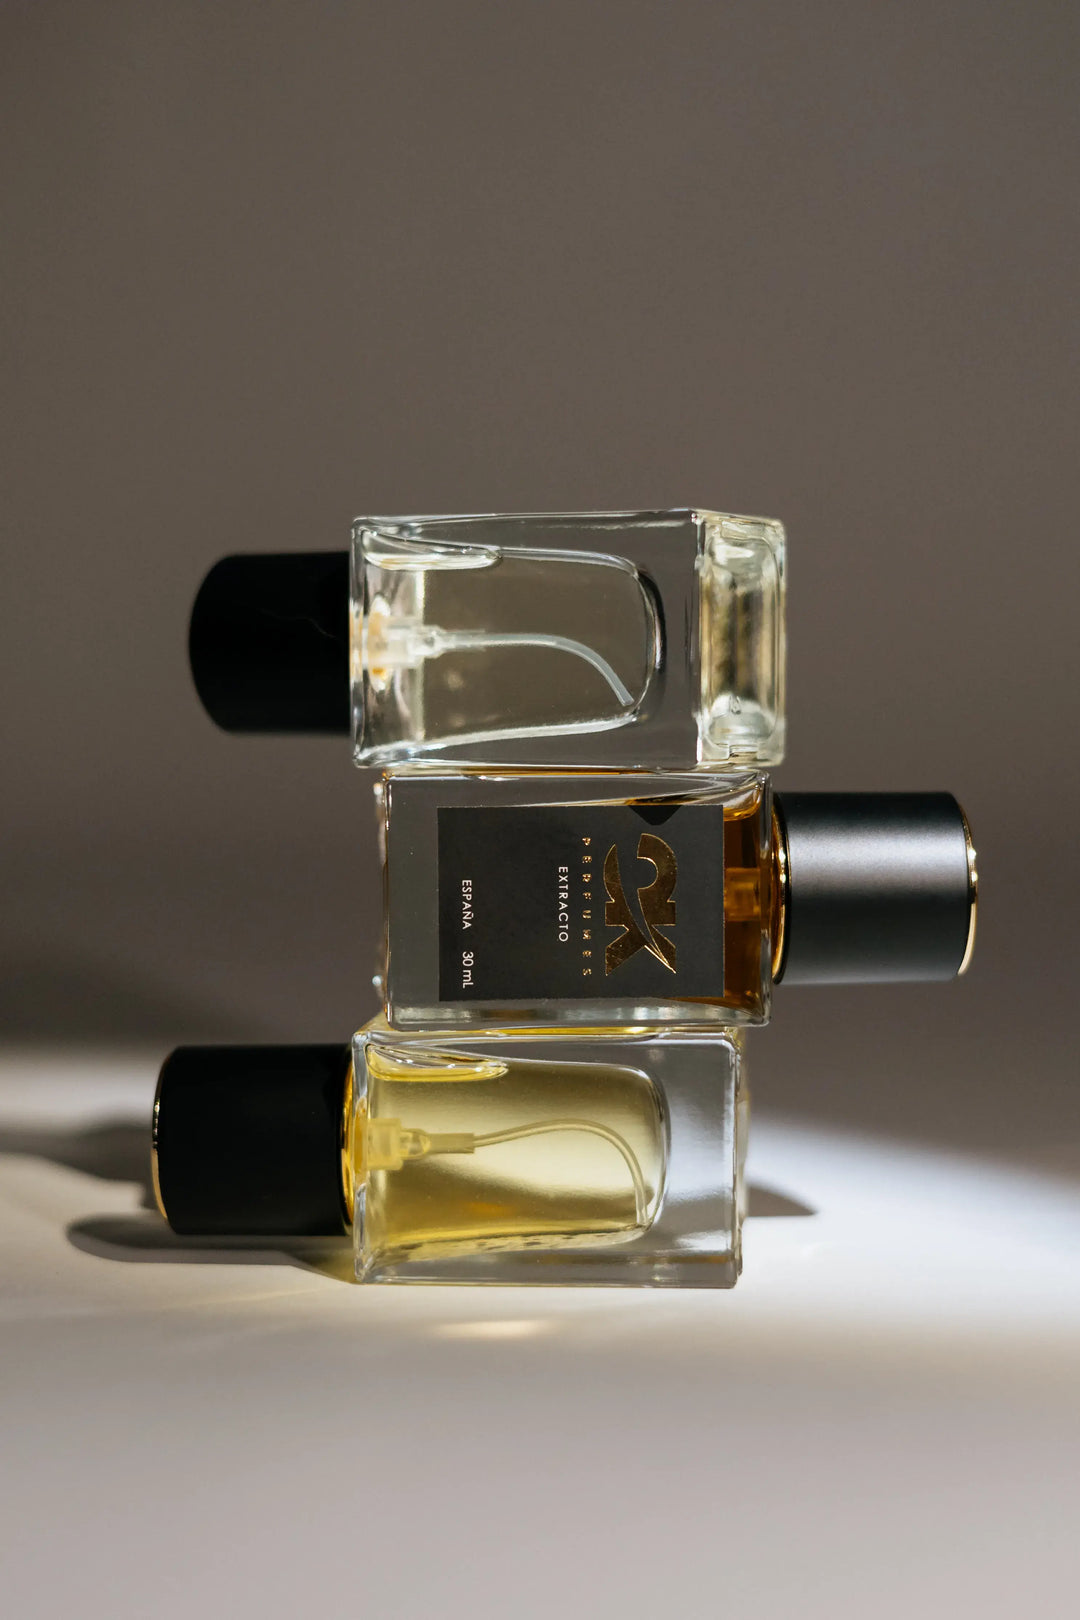 Oudyssey - Extracto de Perfume